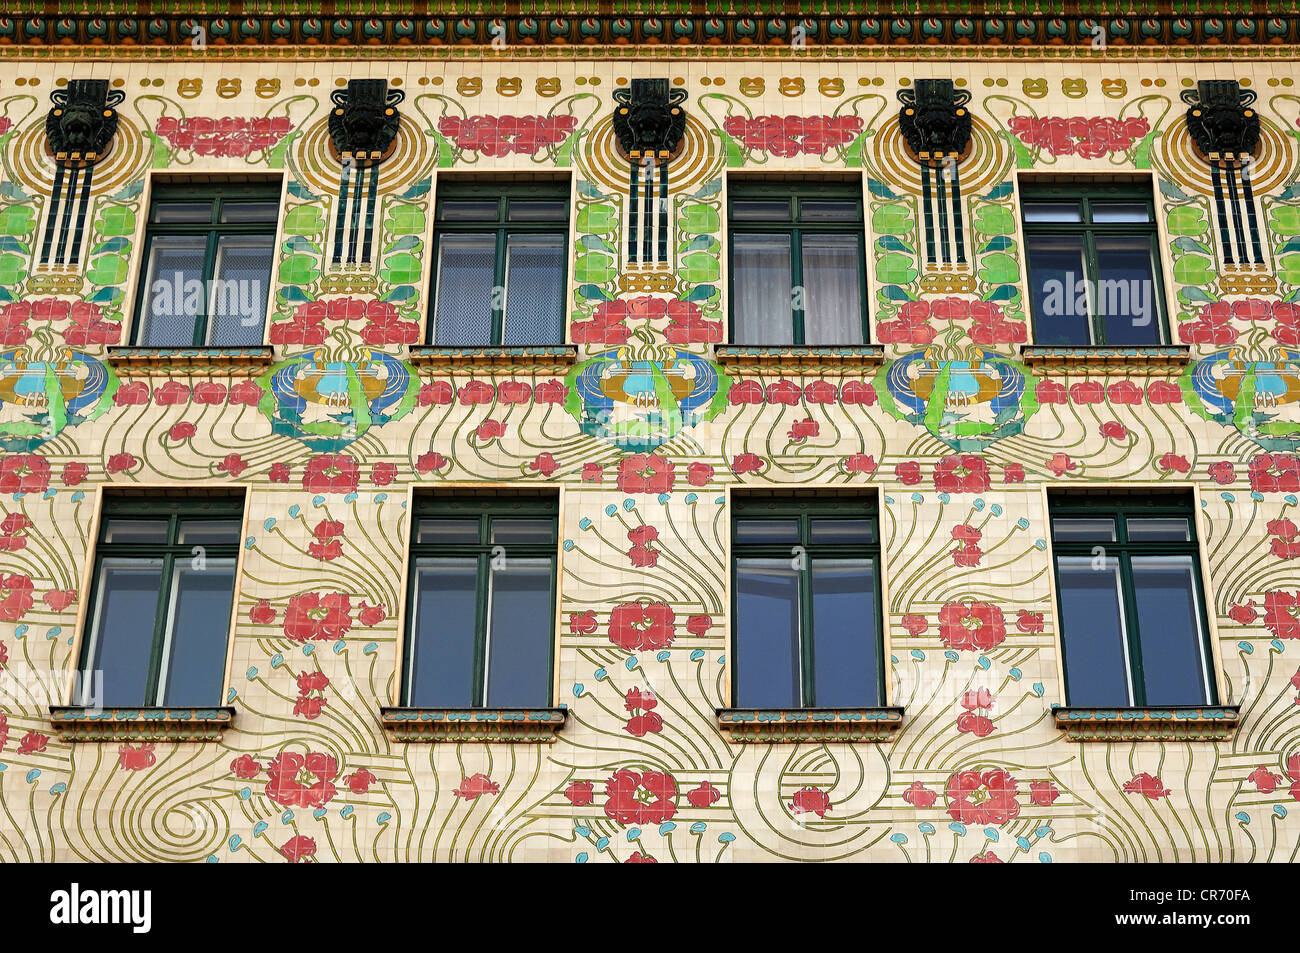 Majolikahaus, Fassade, Jugendstil, 1898 von Kolo Moser, Linke Wienzeile 40, links Wien Zeile, berühmte Mehrfamilienhäuser von Otto Stockfoto